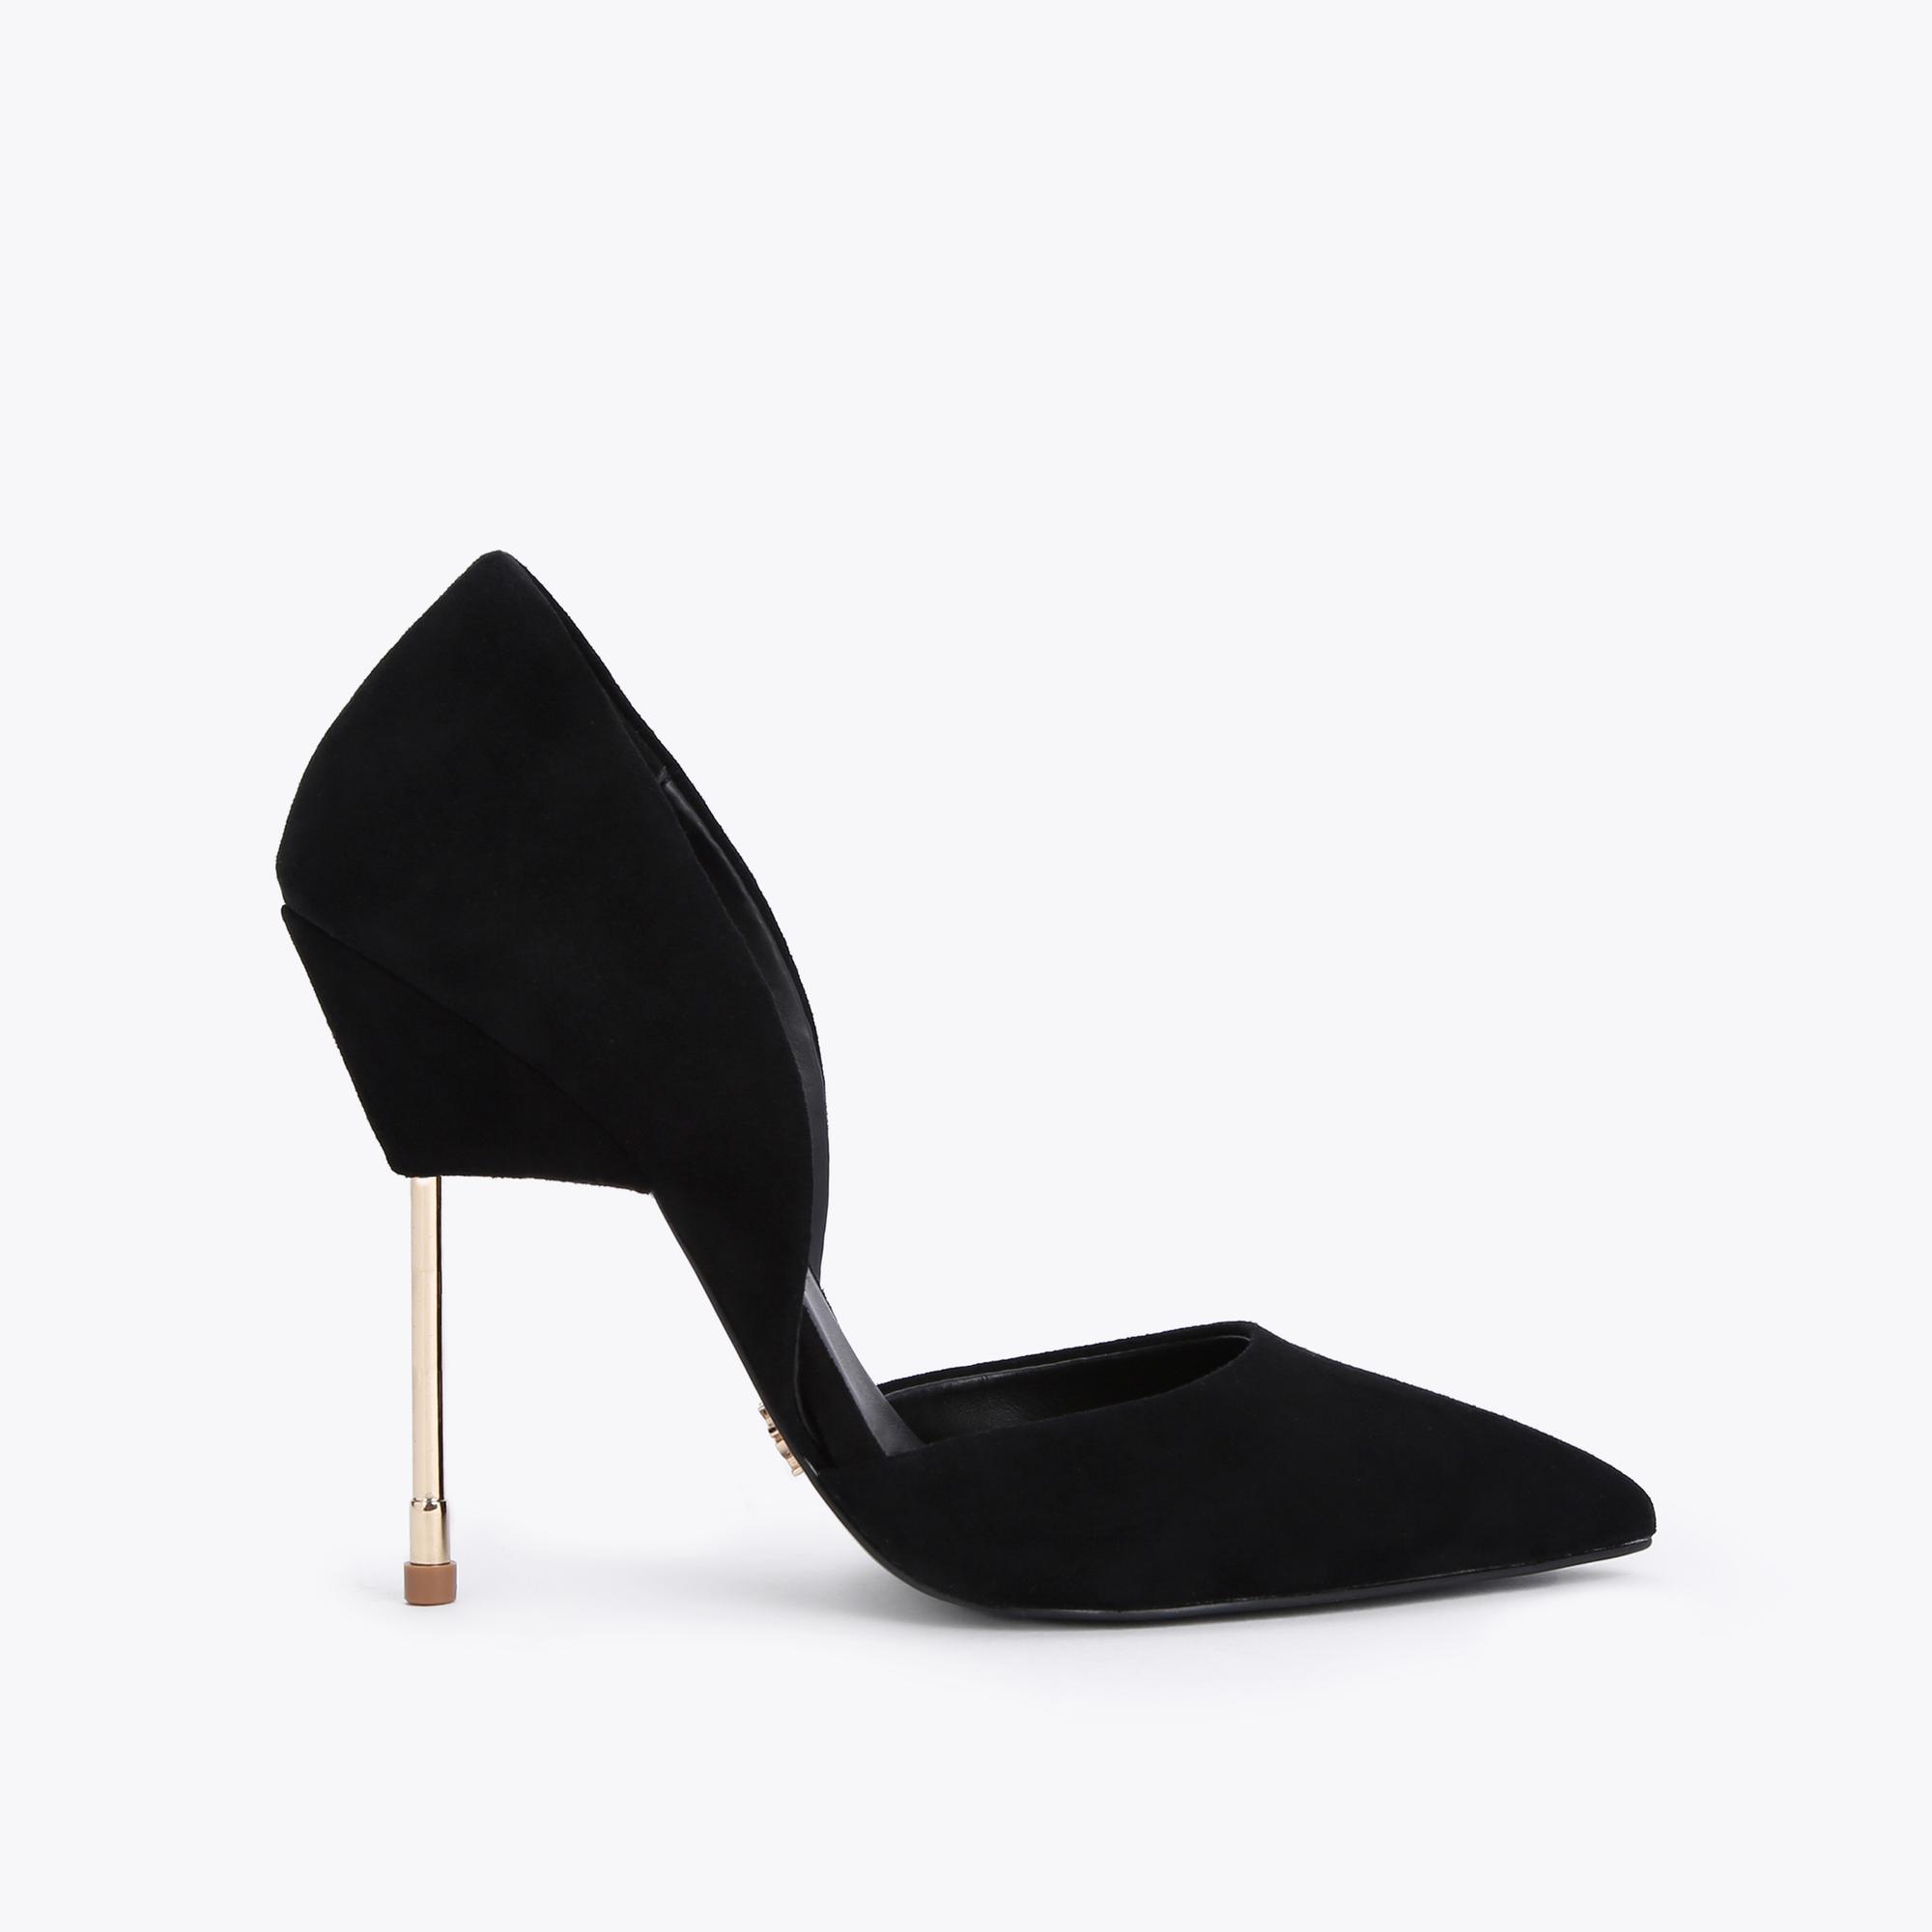 BOND Black Suede Stiletto Heels by KURT GEIGER LONDON